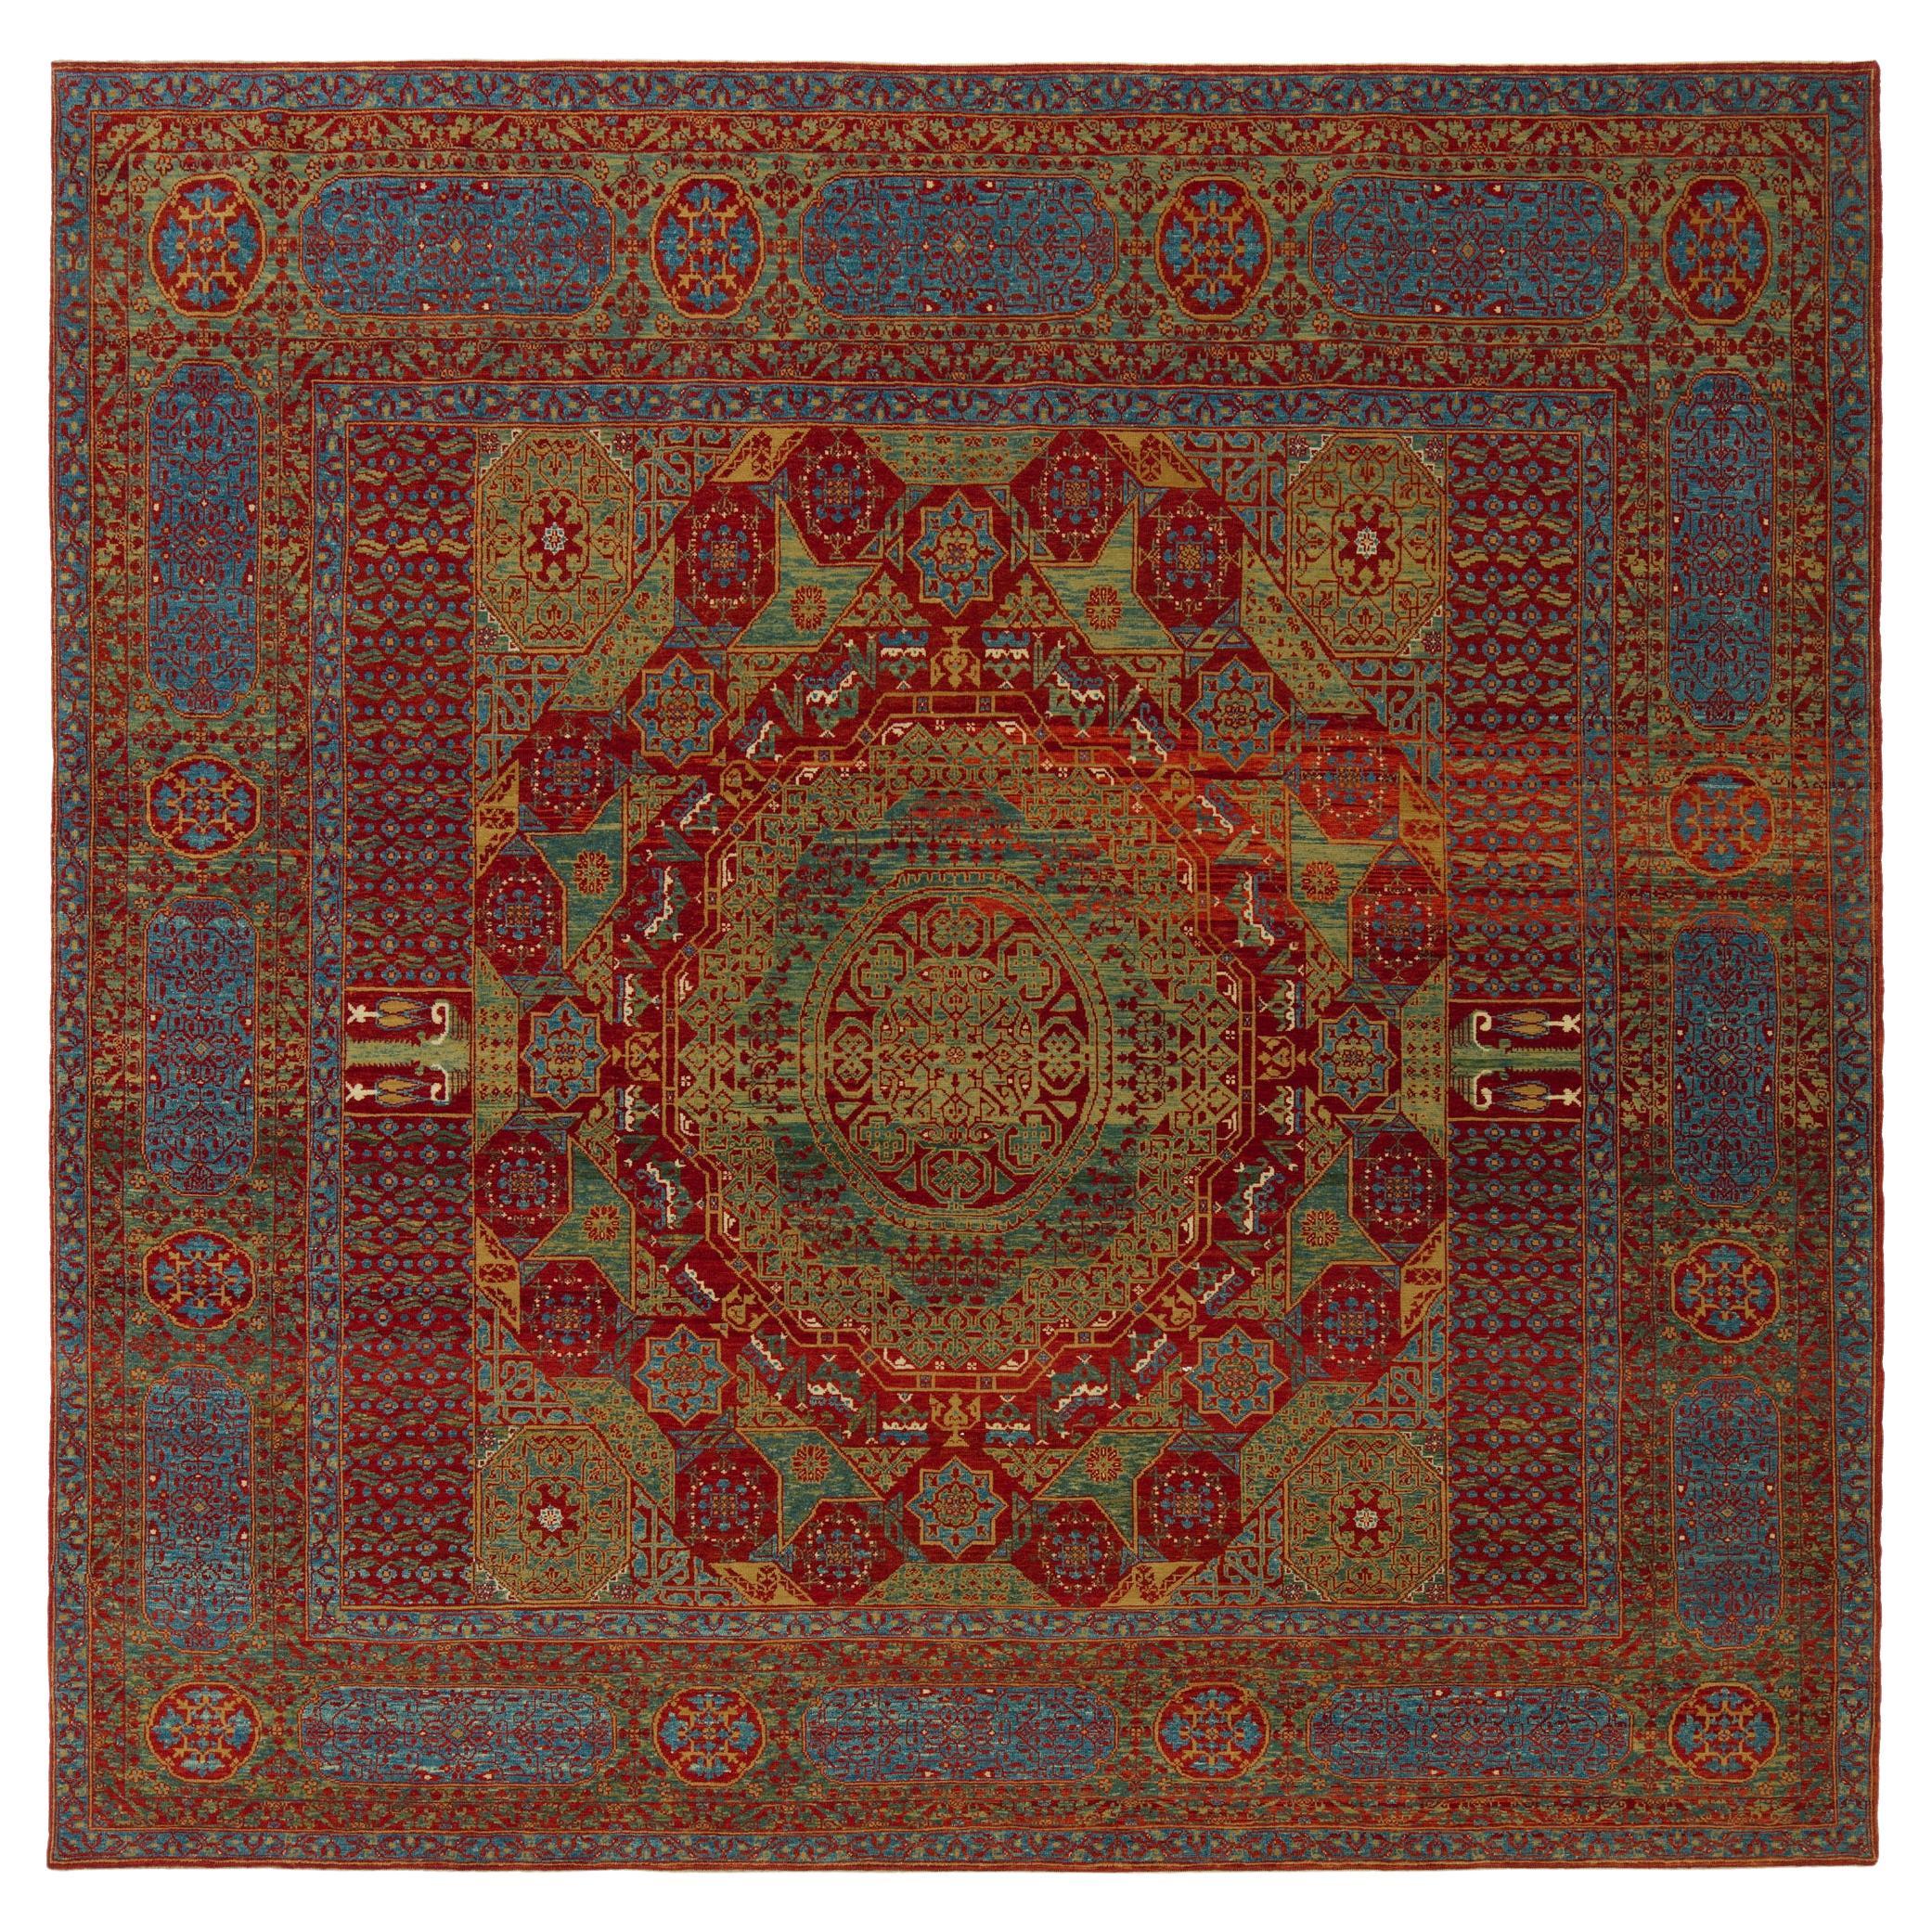 Ararat Rugs The Simonetti Mamluk Carpet 16th C. Revival Rug, Square Natural Dyed